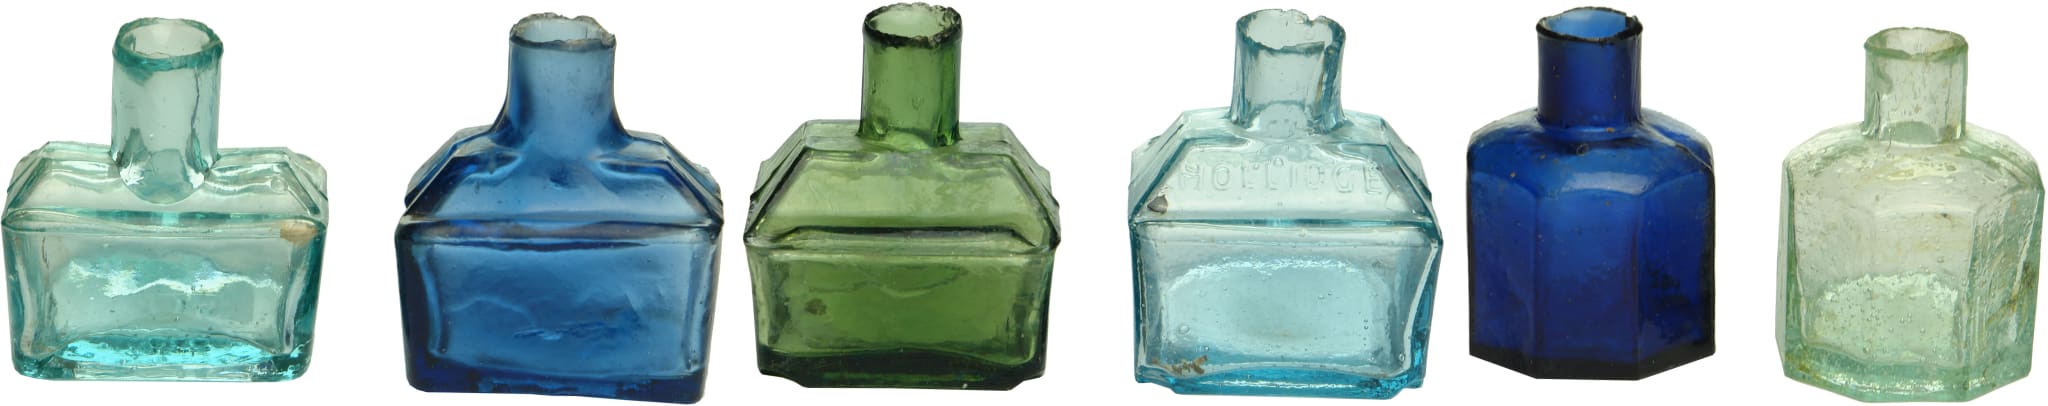 Antique Glass Ink Bottles